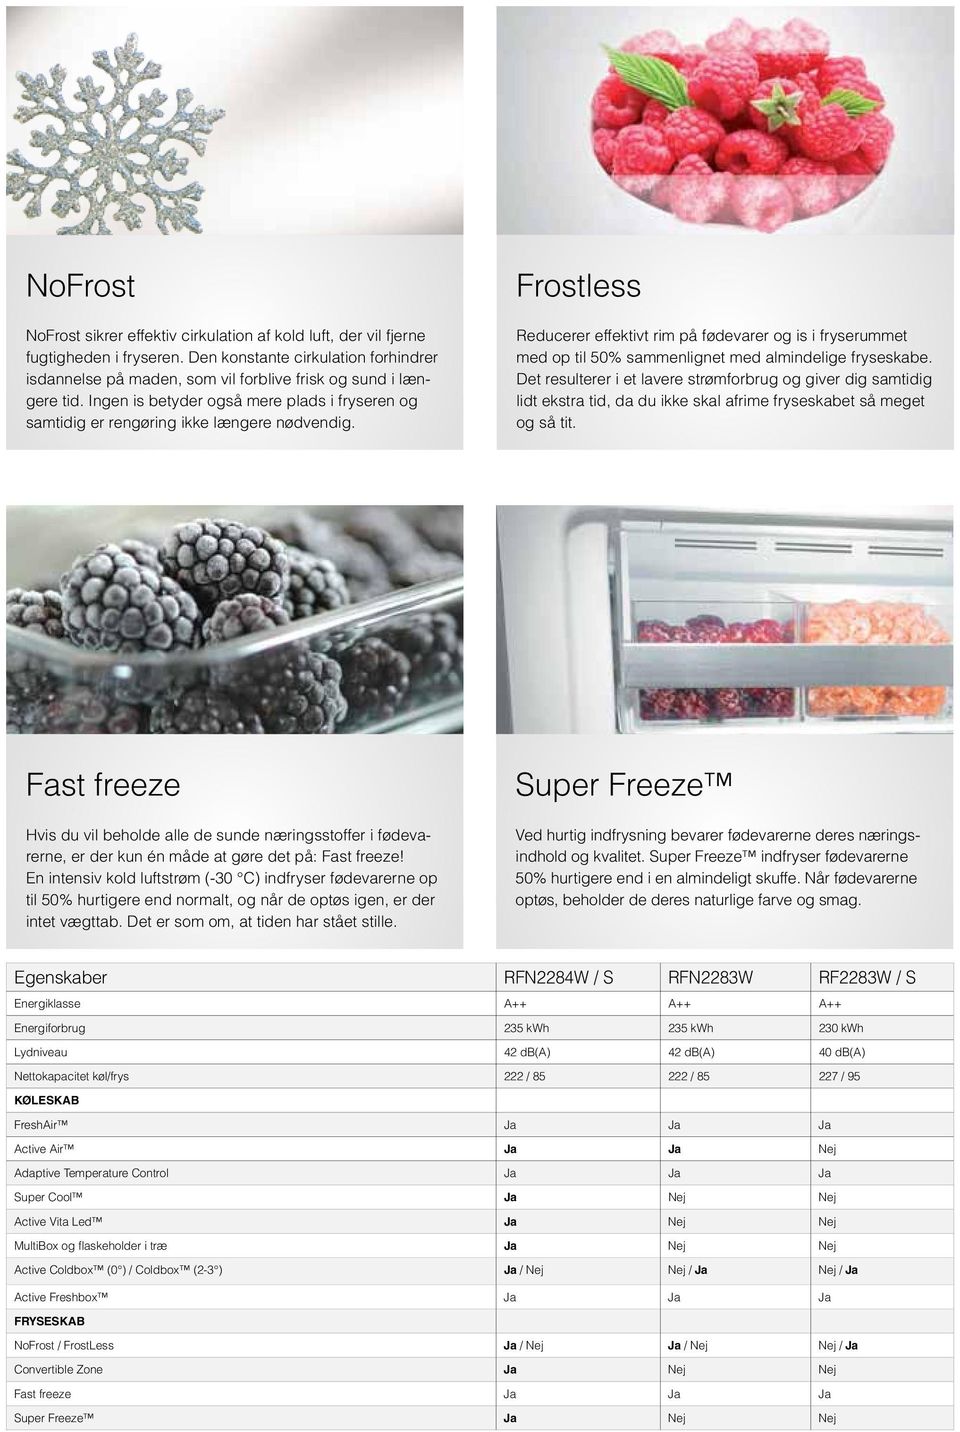 Frostless Reducerer effektivt rim på fødevarer og is i fryserummet med op til 50% sammenlignet med almindelige fryseskabe.